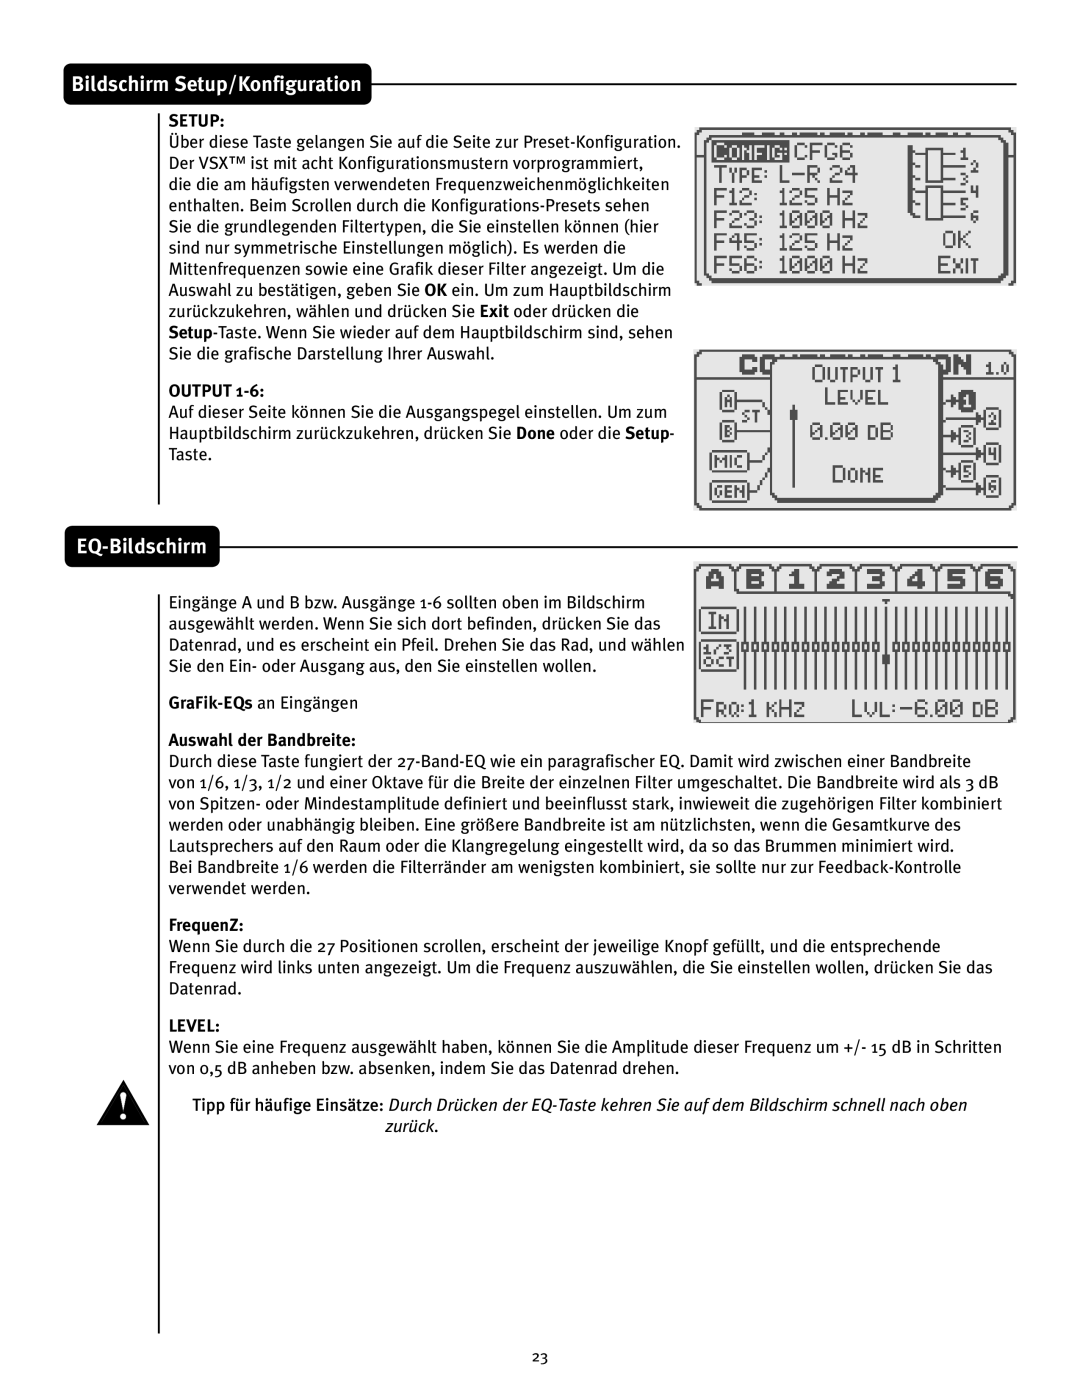 Peavey VSX 26 manual EQ-Bildschirm, Bildschirm Setup/Konfiguration, Output, Auswahl der Bandbreite, FrequenZ, Level 